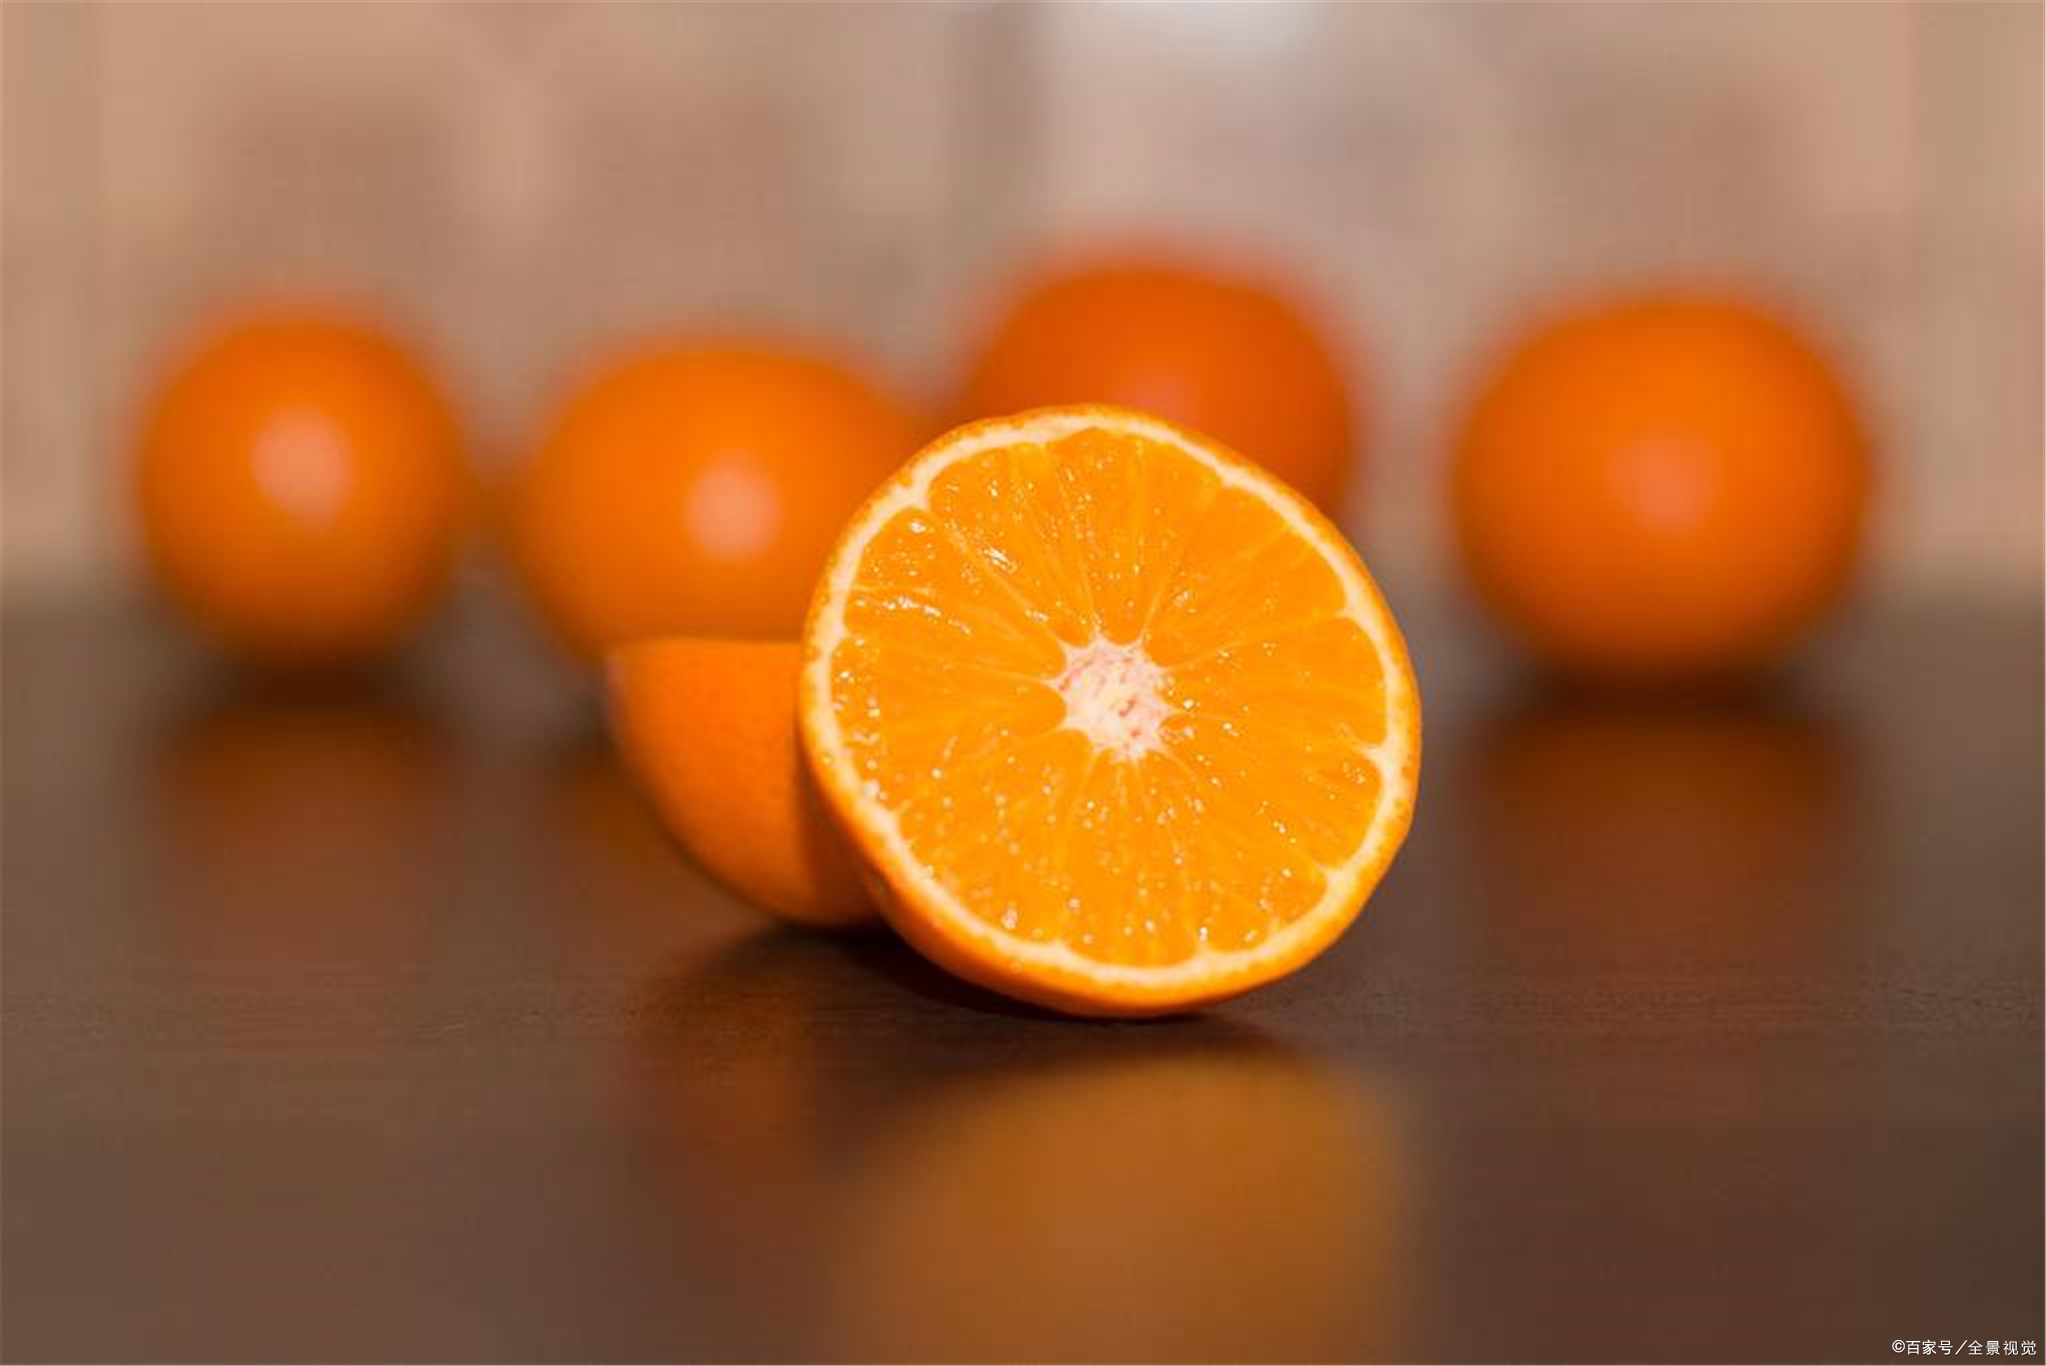 看到这个橘子不要买，更别提吃了，知道为什么吗？